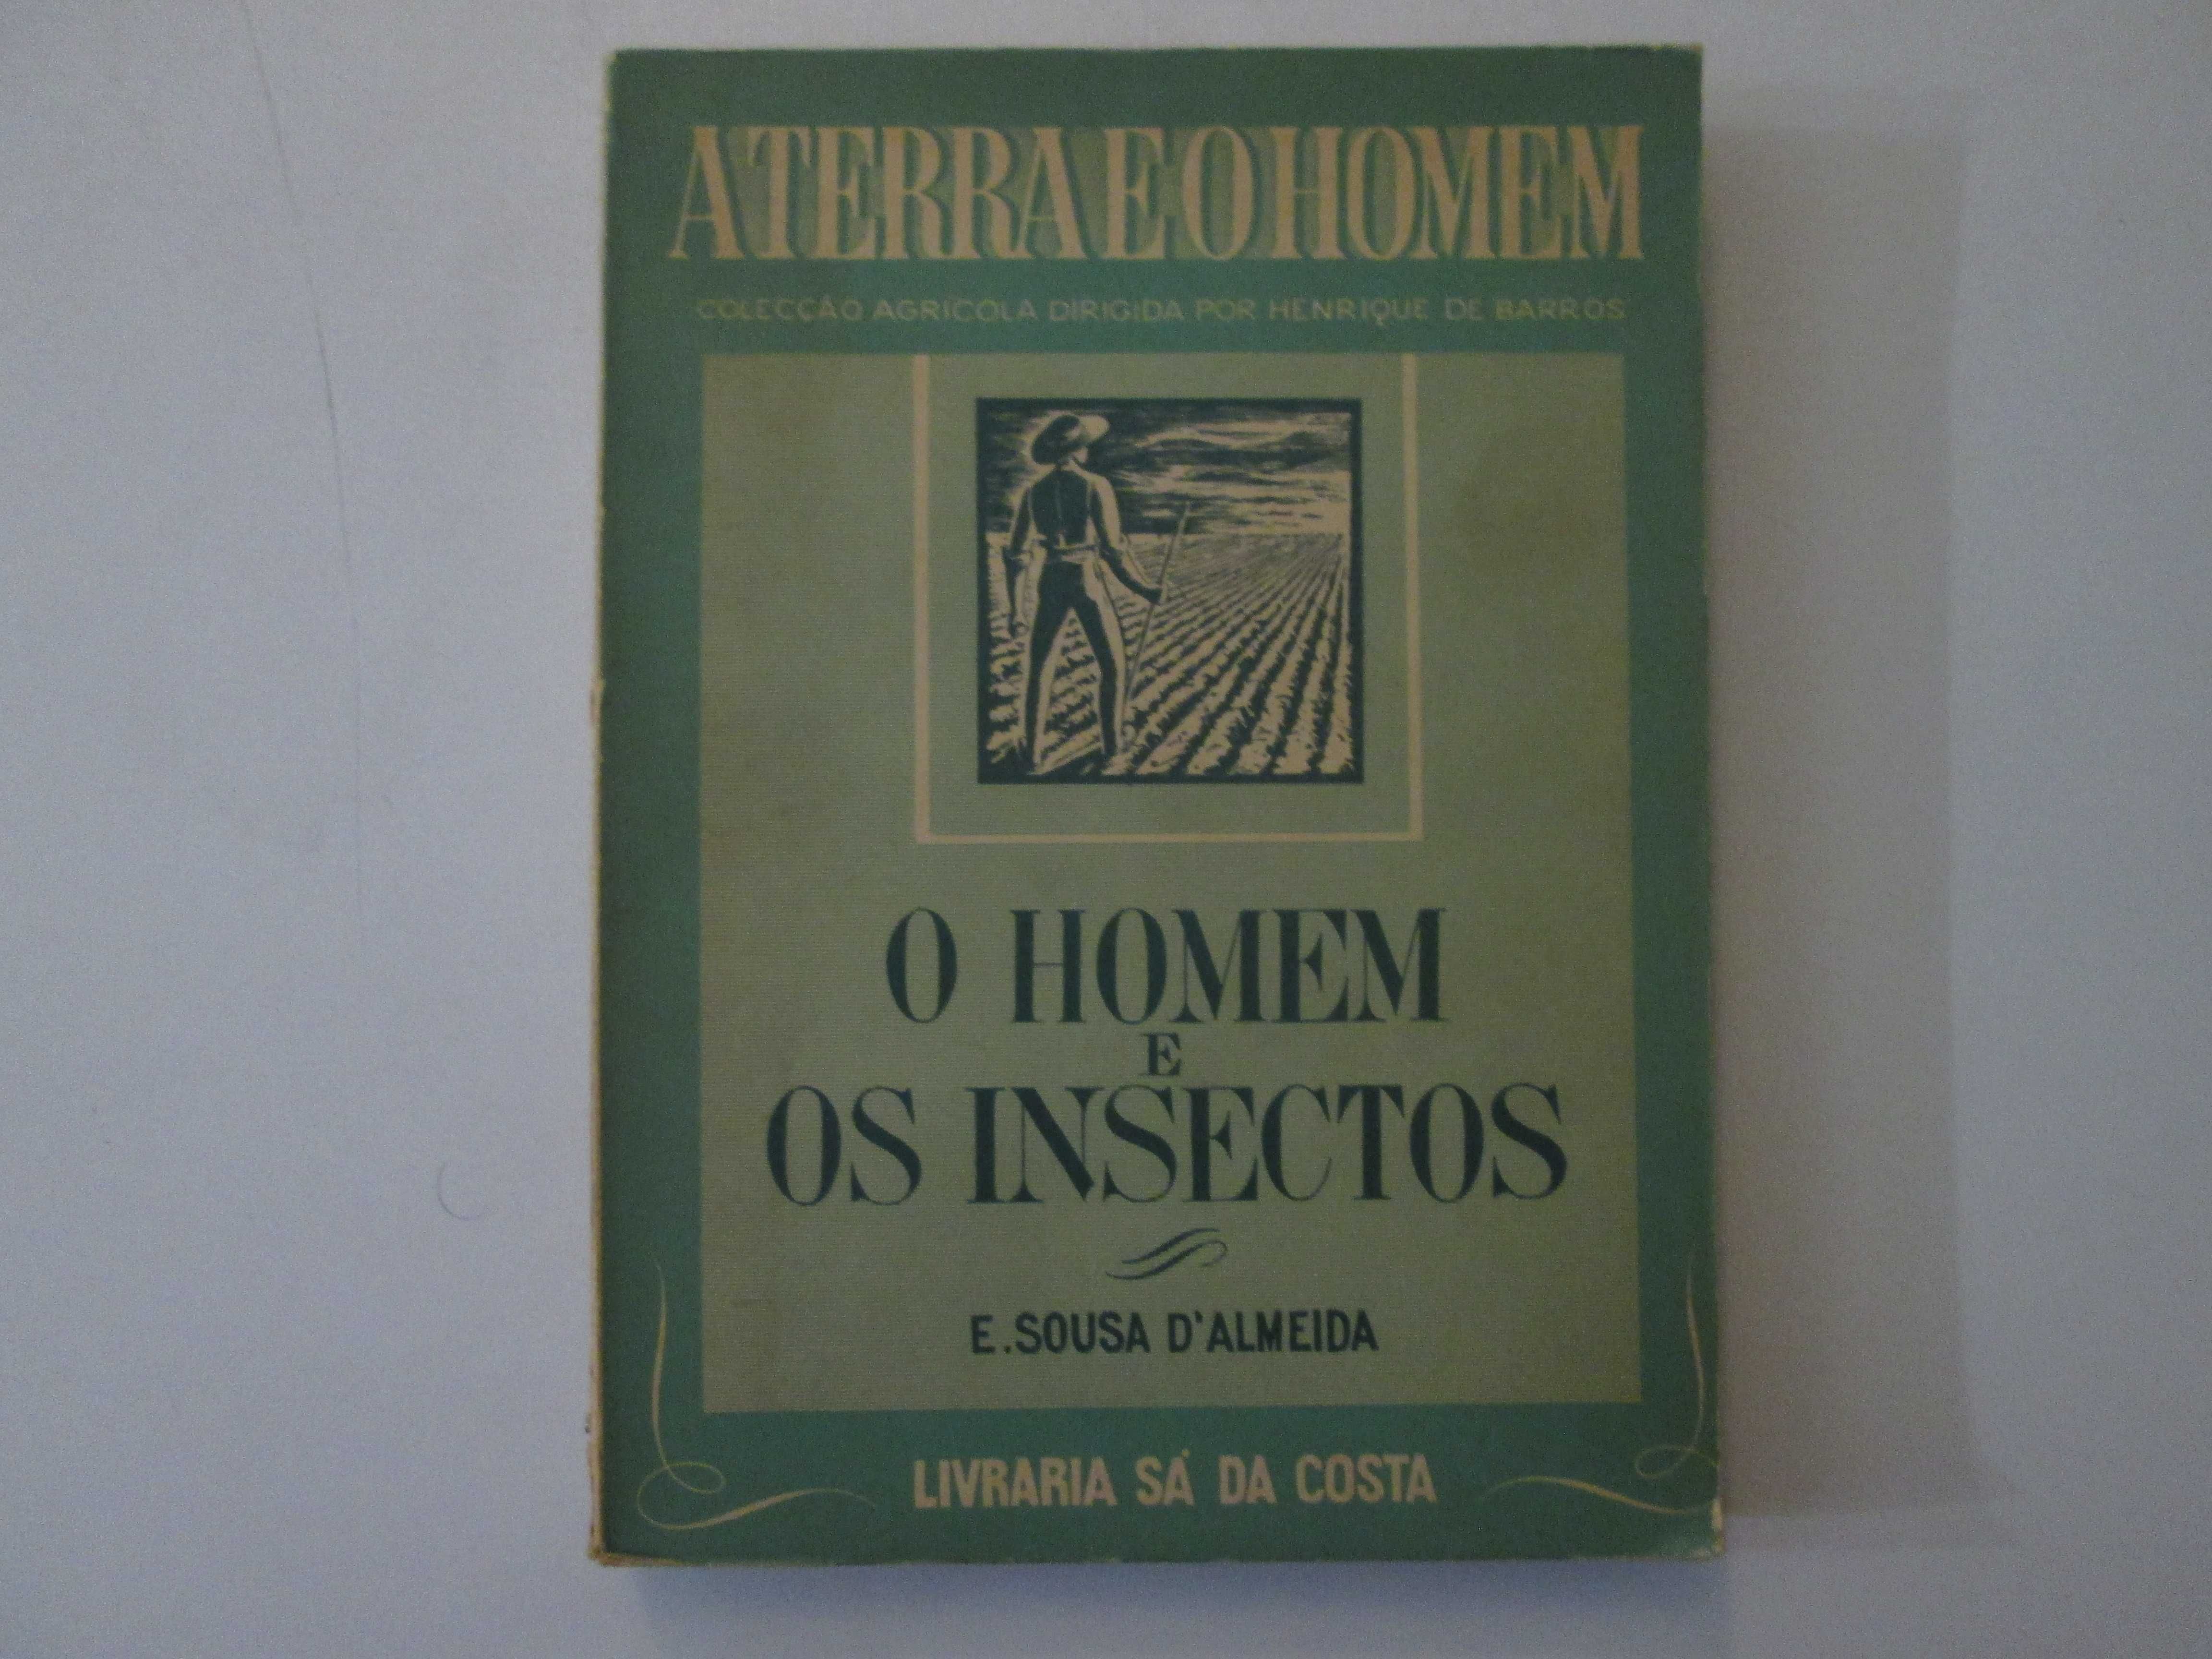 O homem e os insectos- E. Sousa D'Almeida